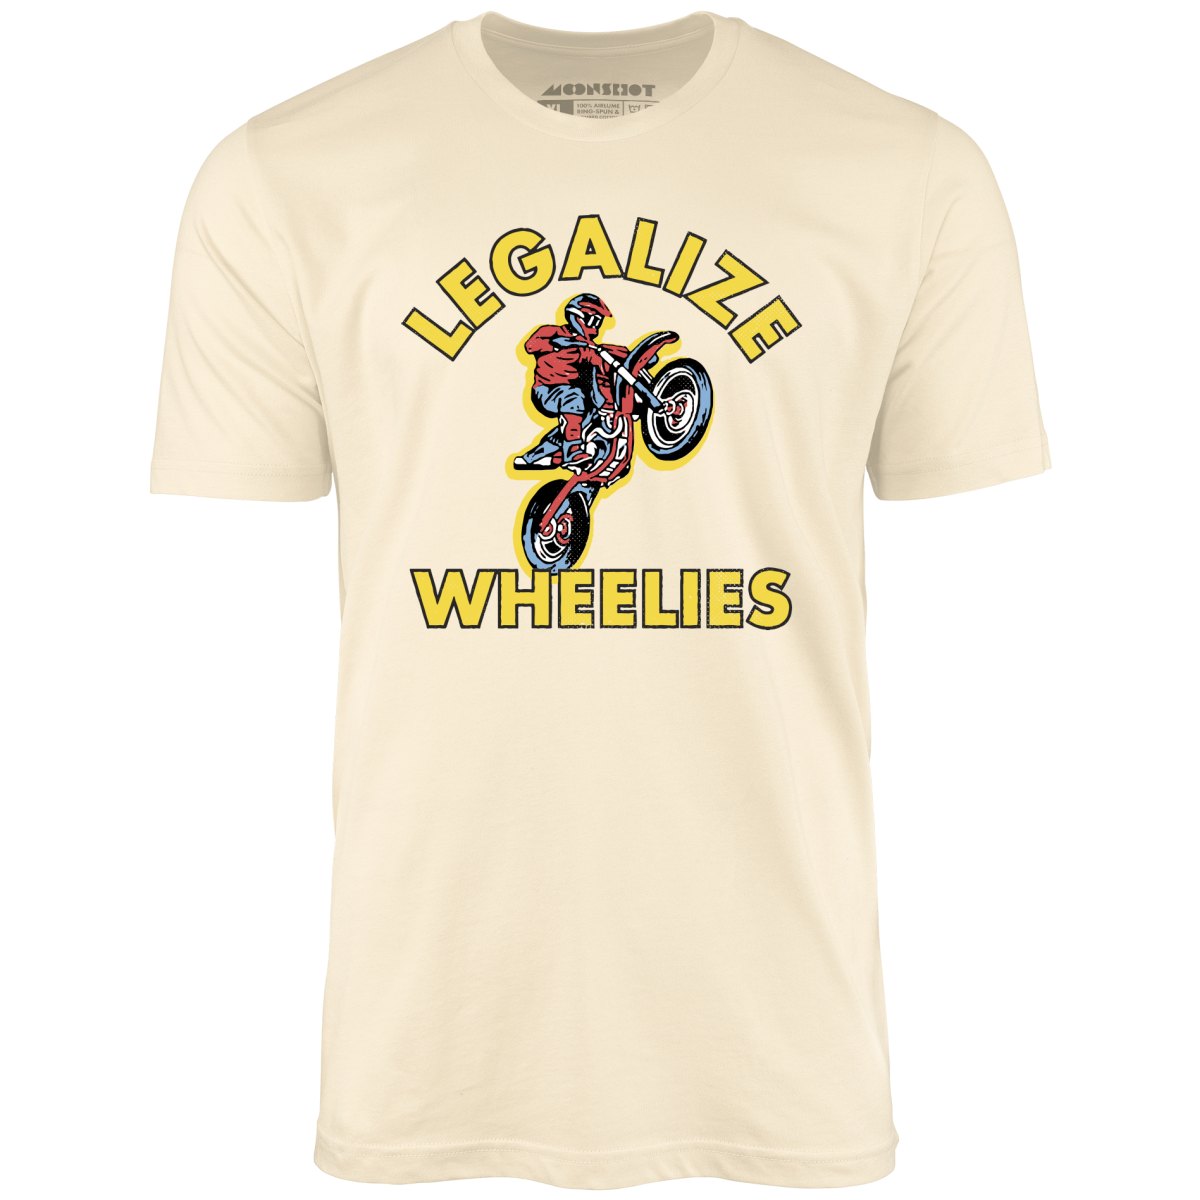 Legalize Wheelies - Unisex T-Shirt